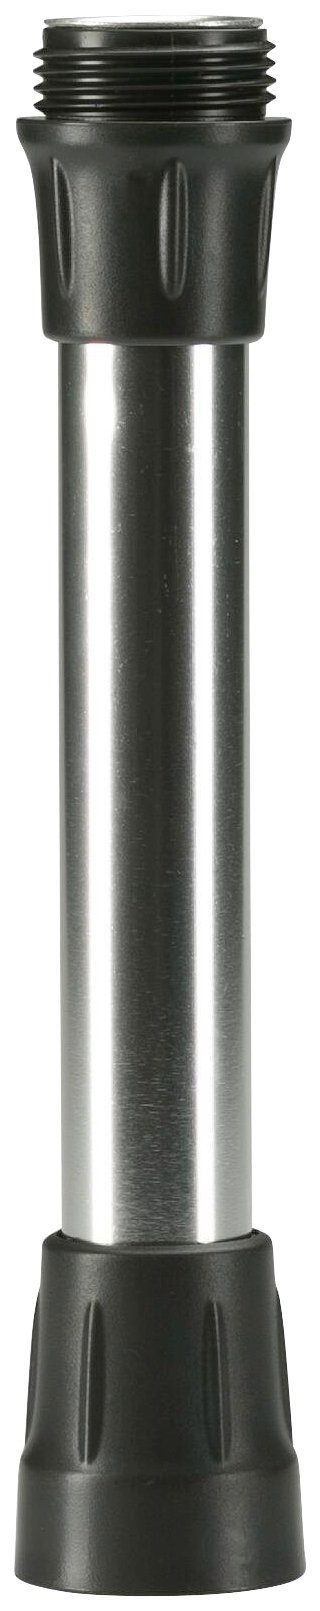 GARDENA Wasserstiel 1420-20, für Regenfasspumpen, 21 cm